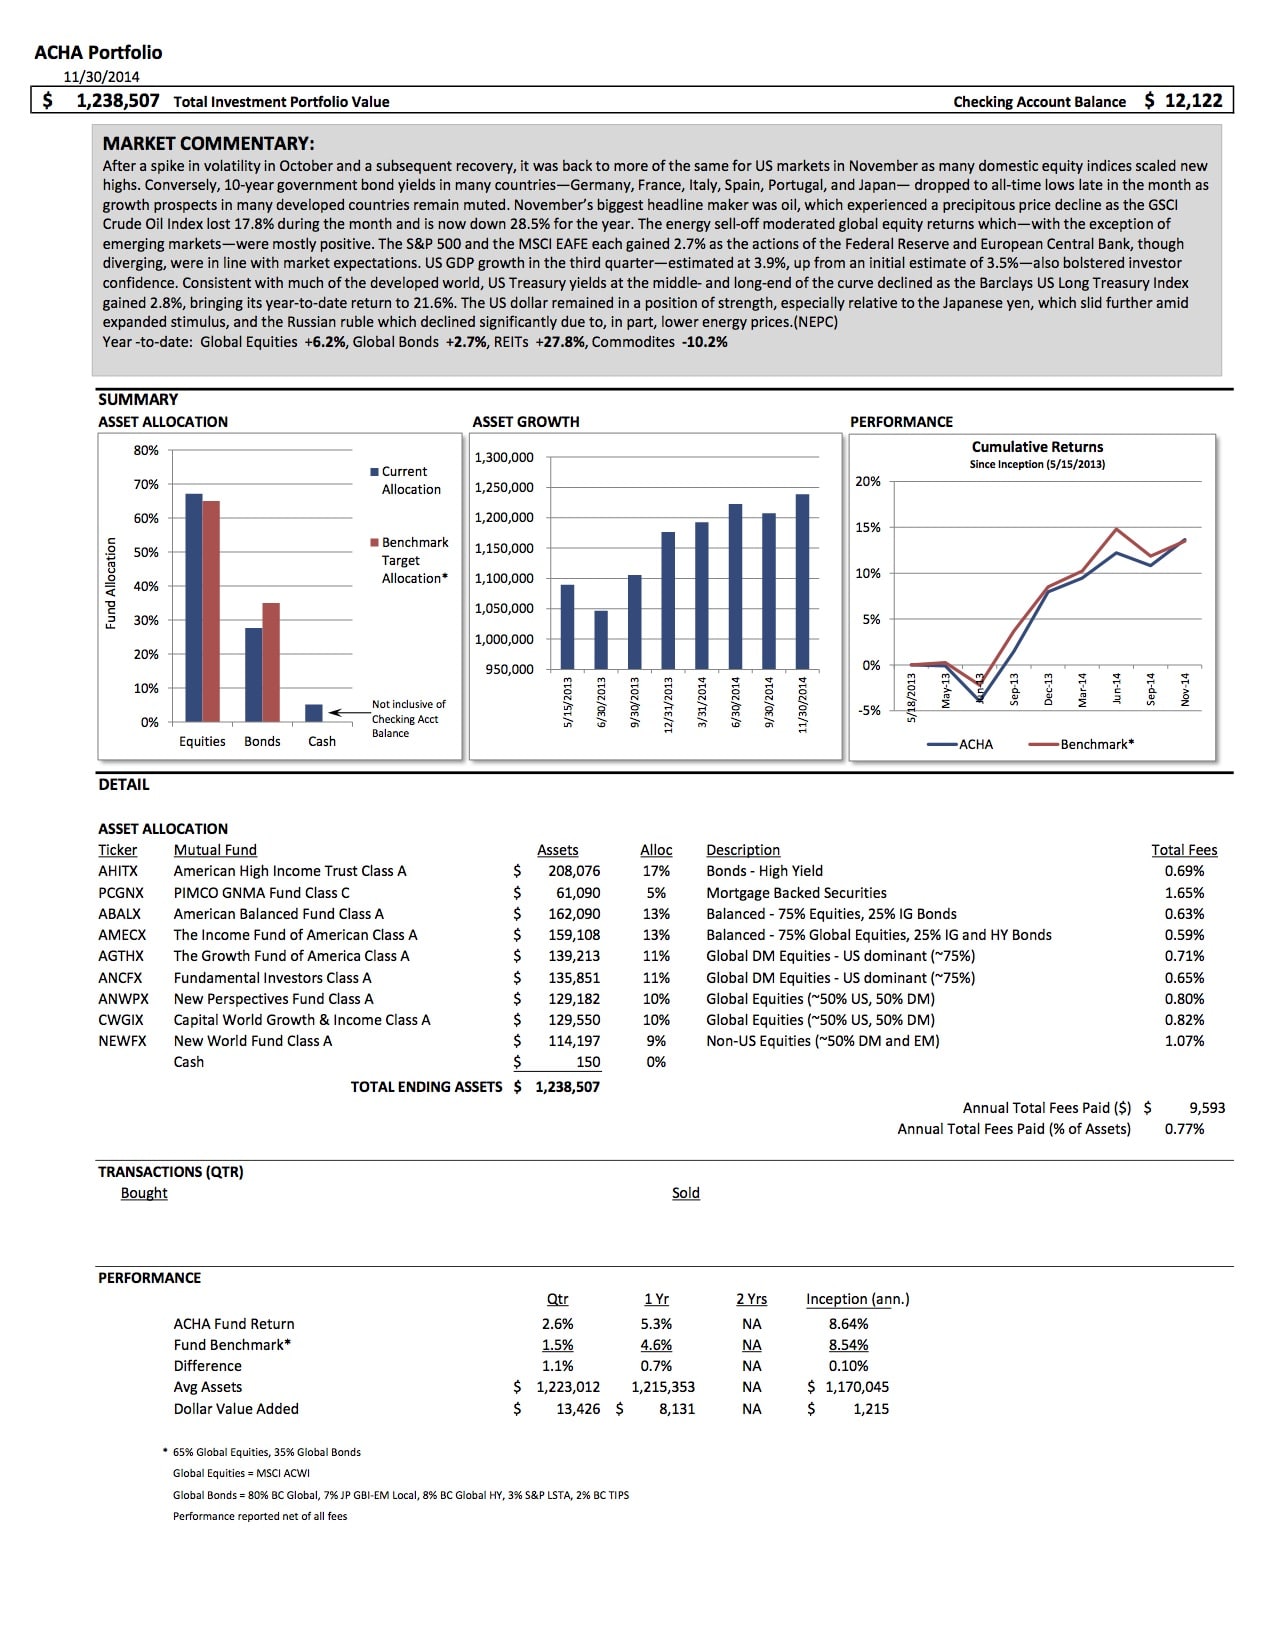 2015-report-acha-portfolio